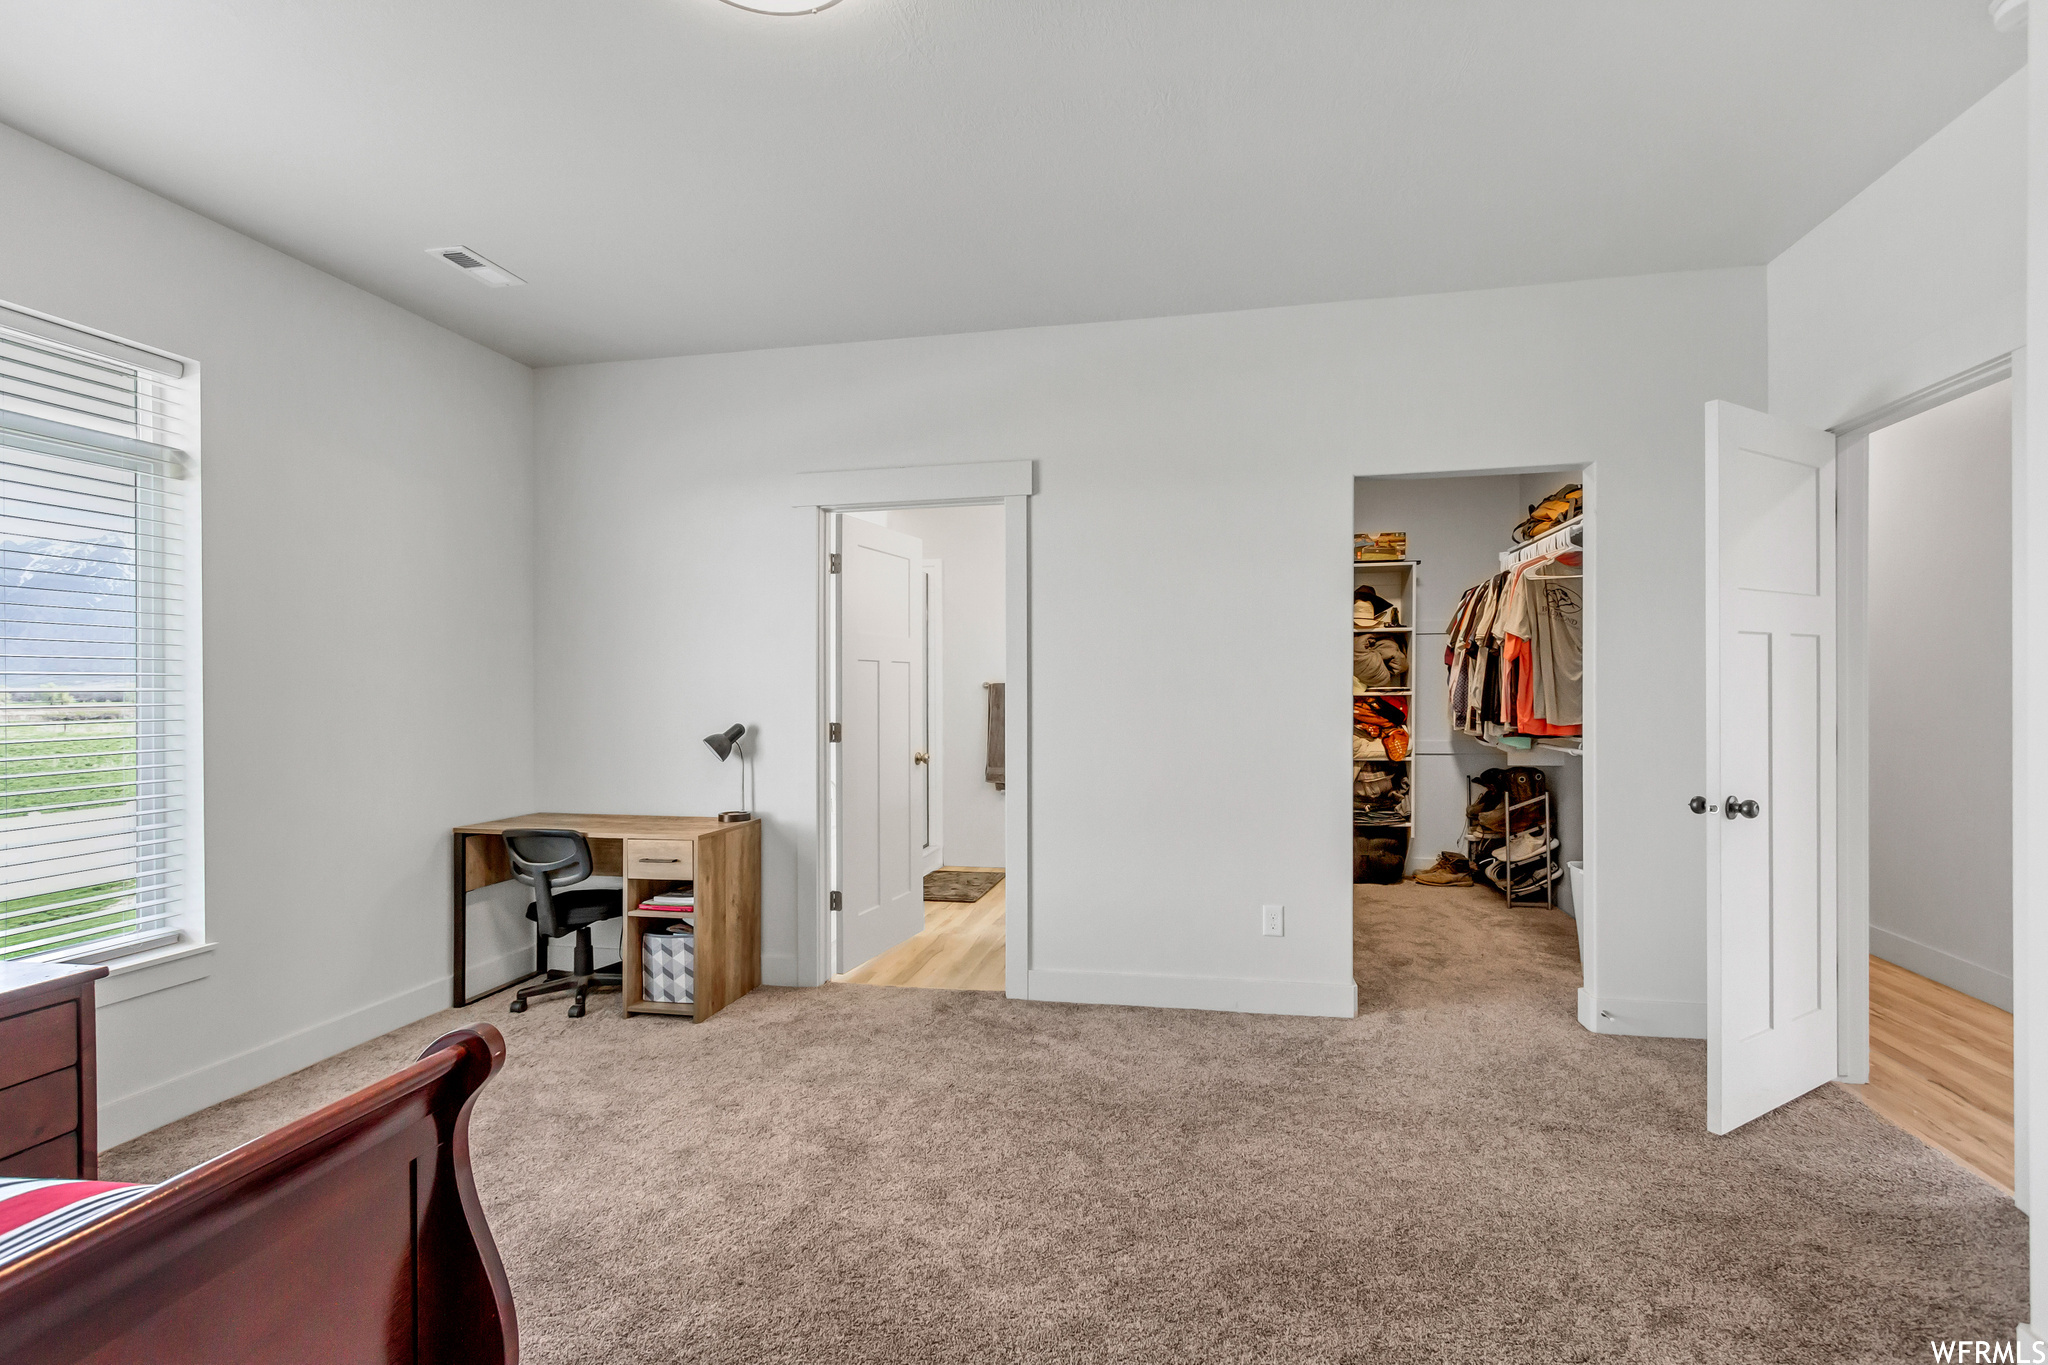 Interior space with a spacious closet, light carpet, and a closet